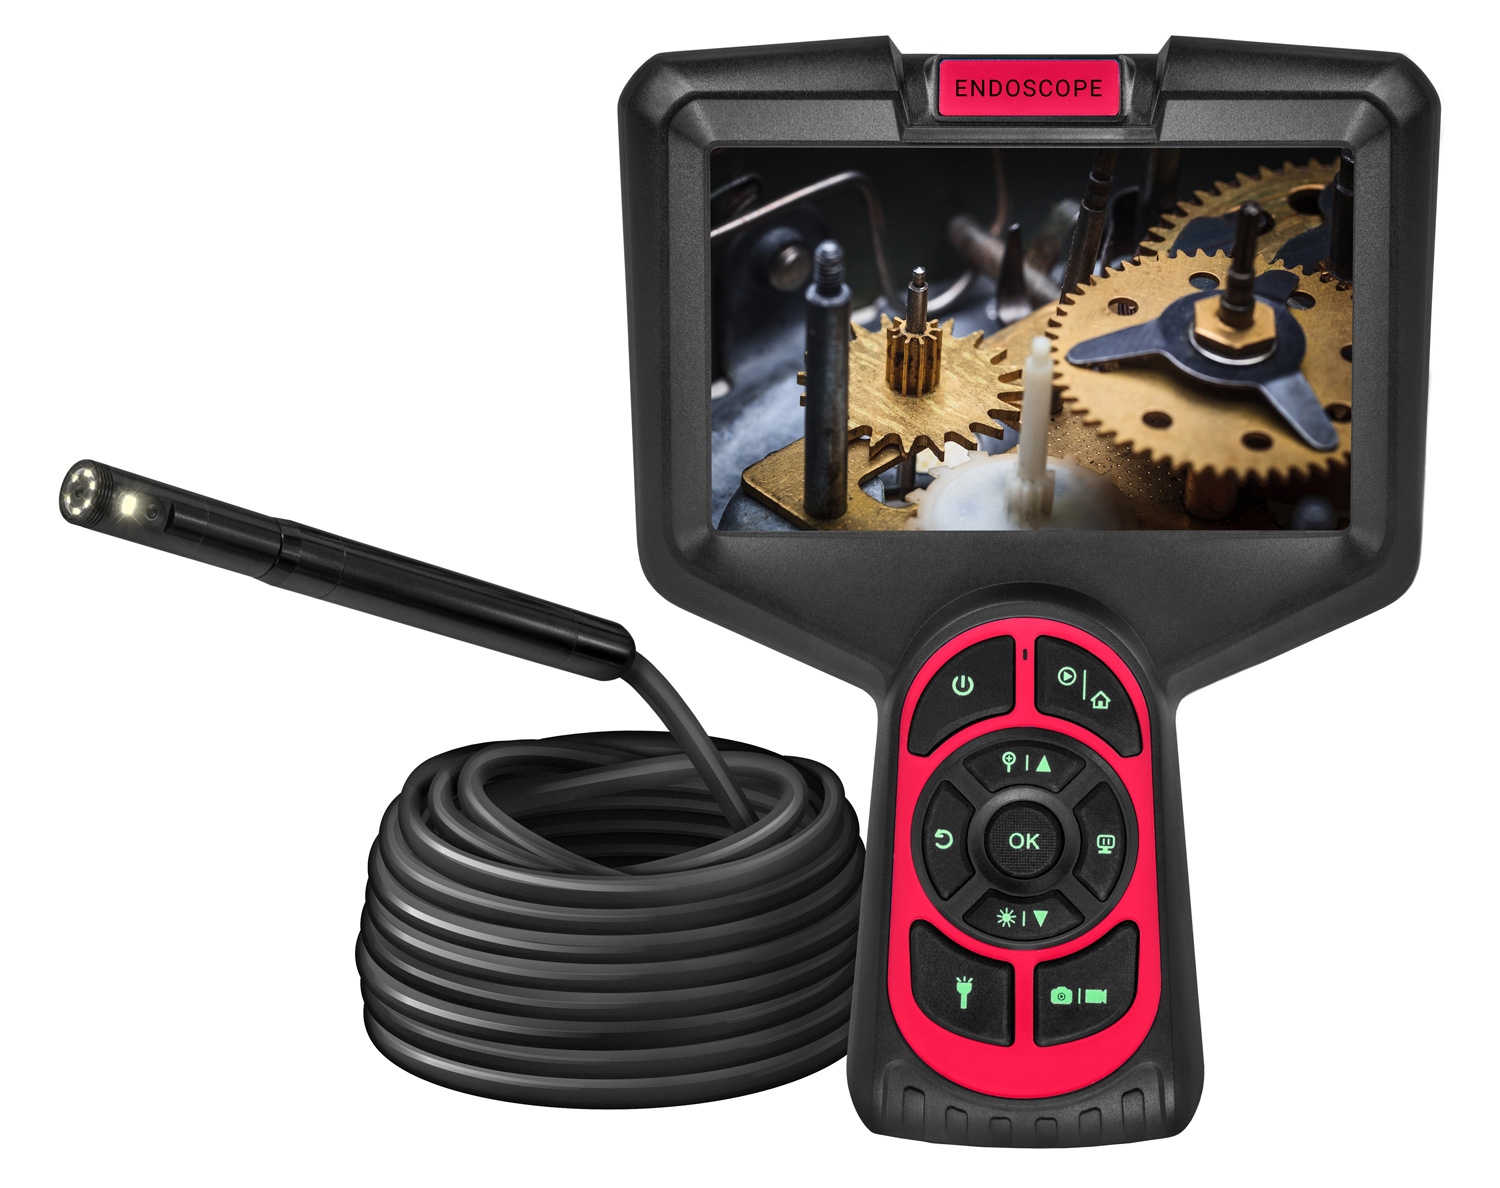 Эндоскоп CARCAM ENDO 5MP Auto focus M70 веб камера logitech c922 pro stream full hd 1080p 30fps 720p 60fps автофокус угол обзора 78° стереомикрофон лицензия xsplit на 3мес кабель 1 5м